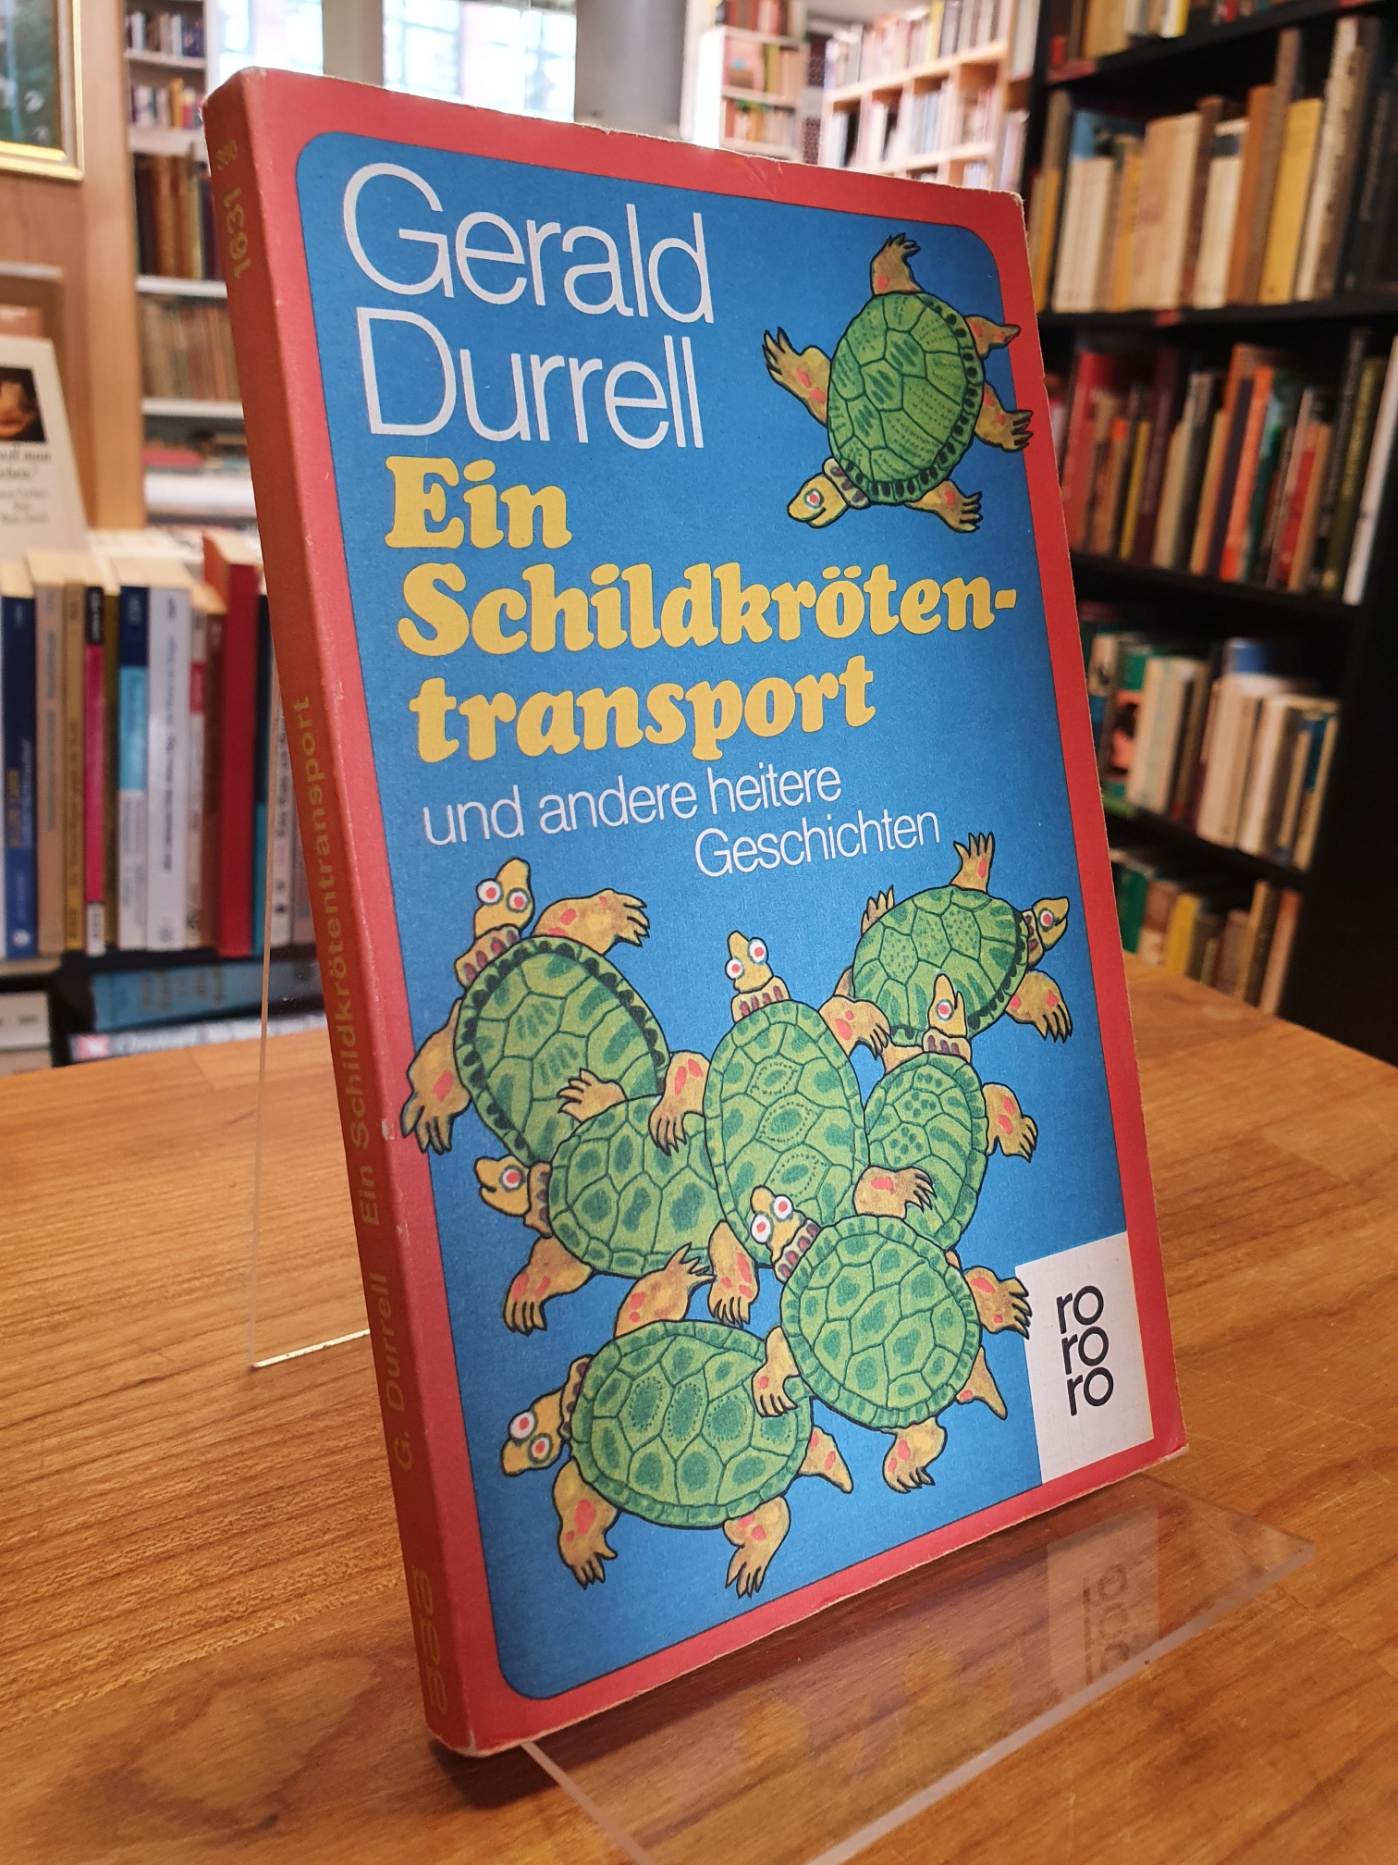 Durrell, Ein Schildkrötentransport und andere heitere Geschichten,